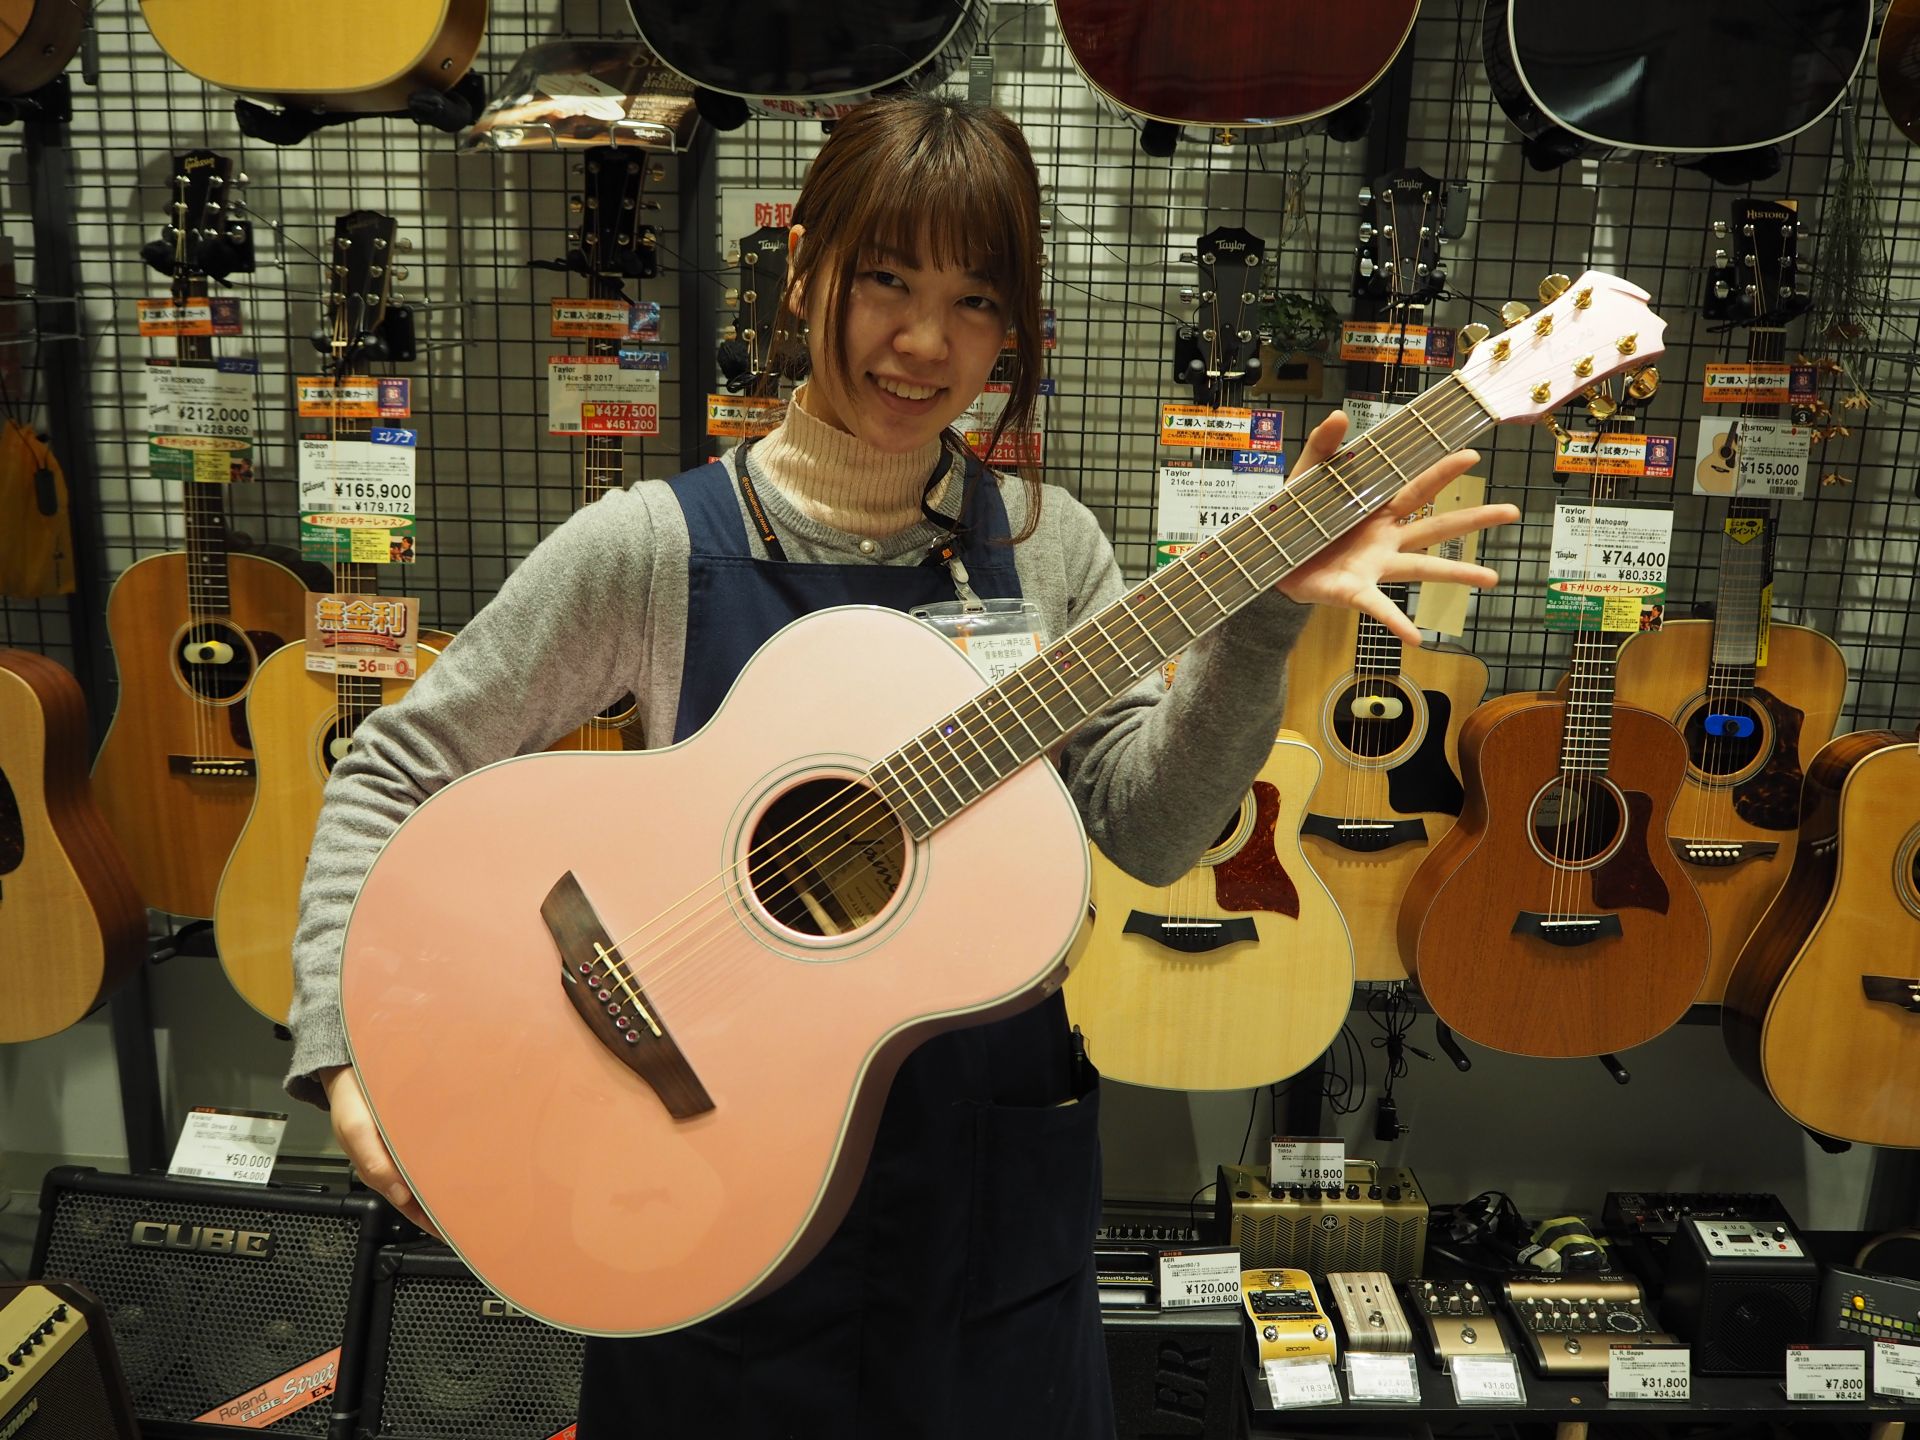 アコースティックギター 新入荷 春らしいカラーで可愛いアコースティックギターj 500a Spcが入荷しました 限定商品 イオンモール神戸北店 店舗情報 島村楽器